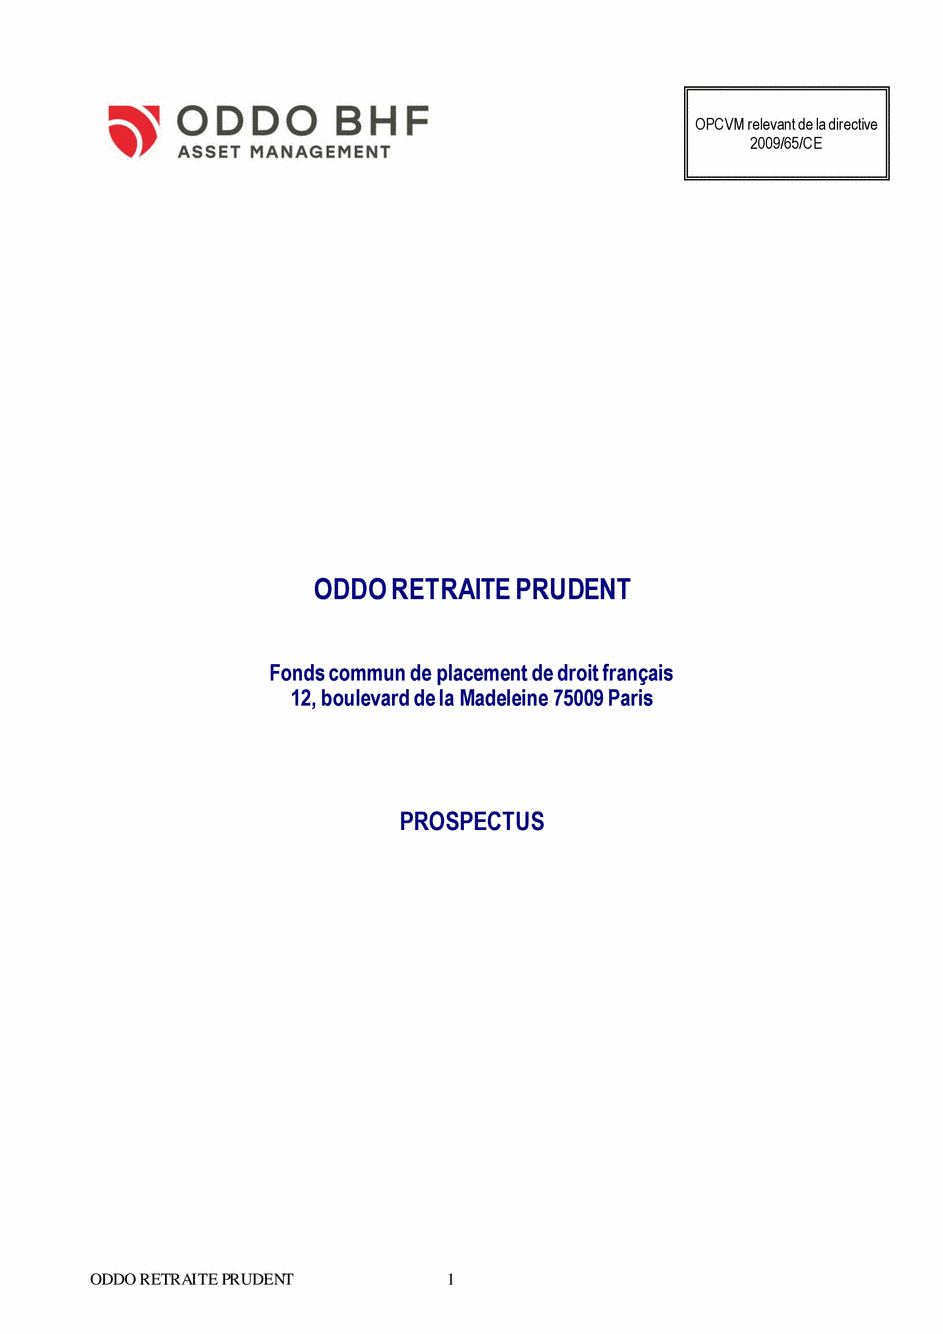 Prospectus ODDO RETRAITE PRUDENT Part B - 14/02/2020 - Français